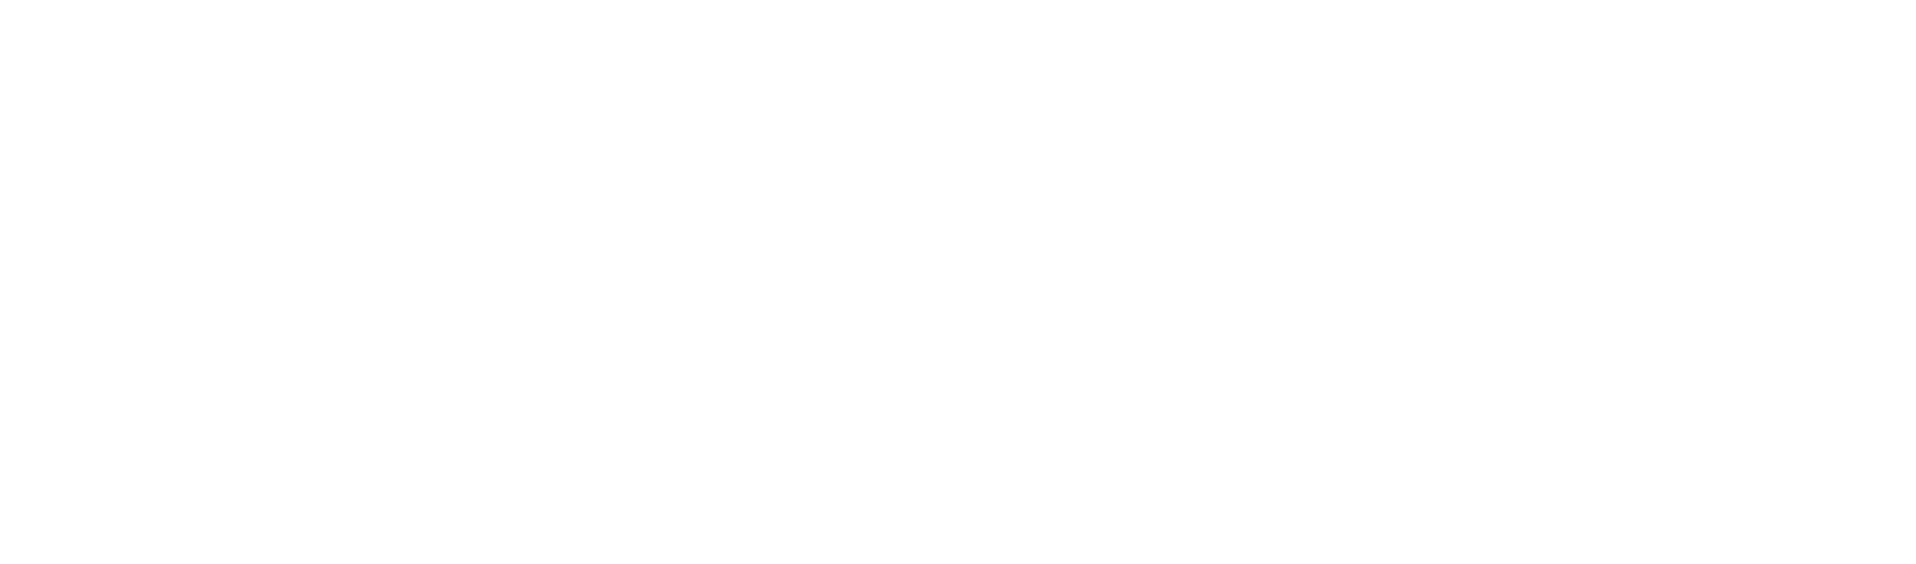 Ghost Whisperer logo